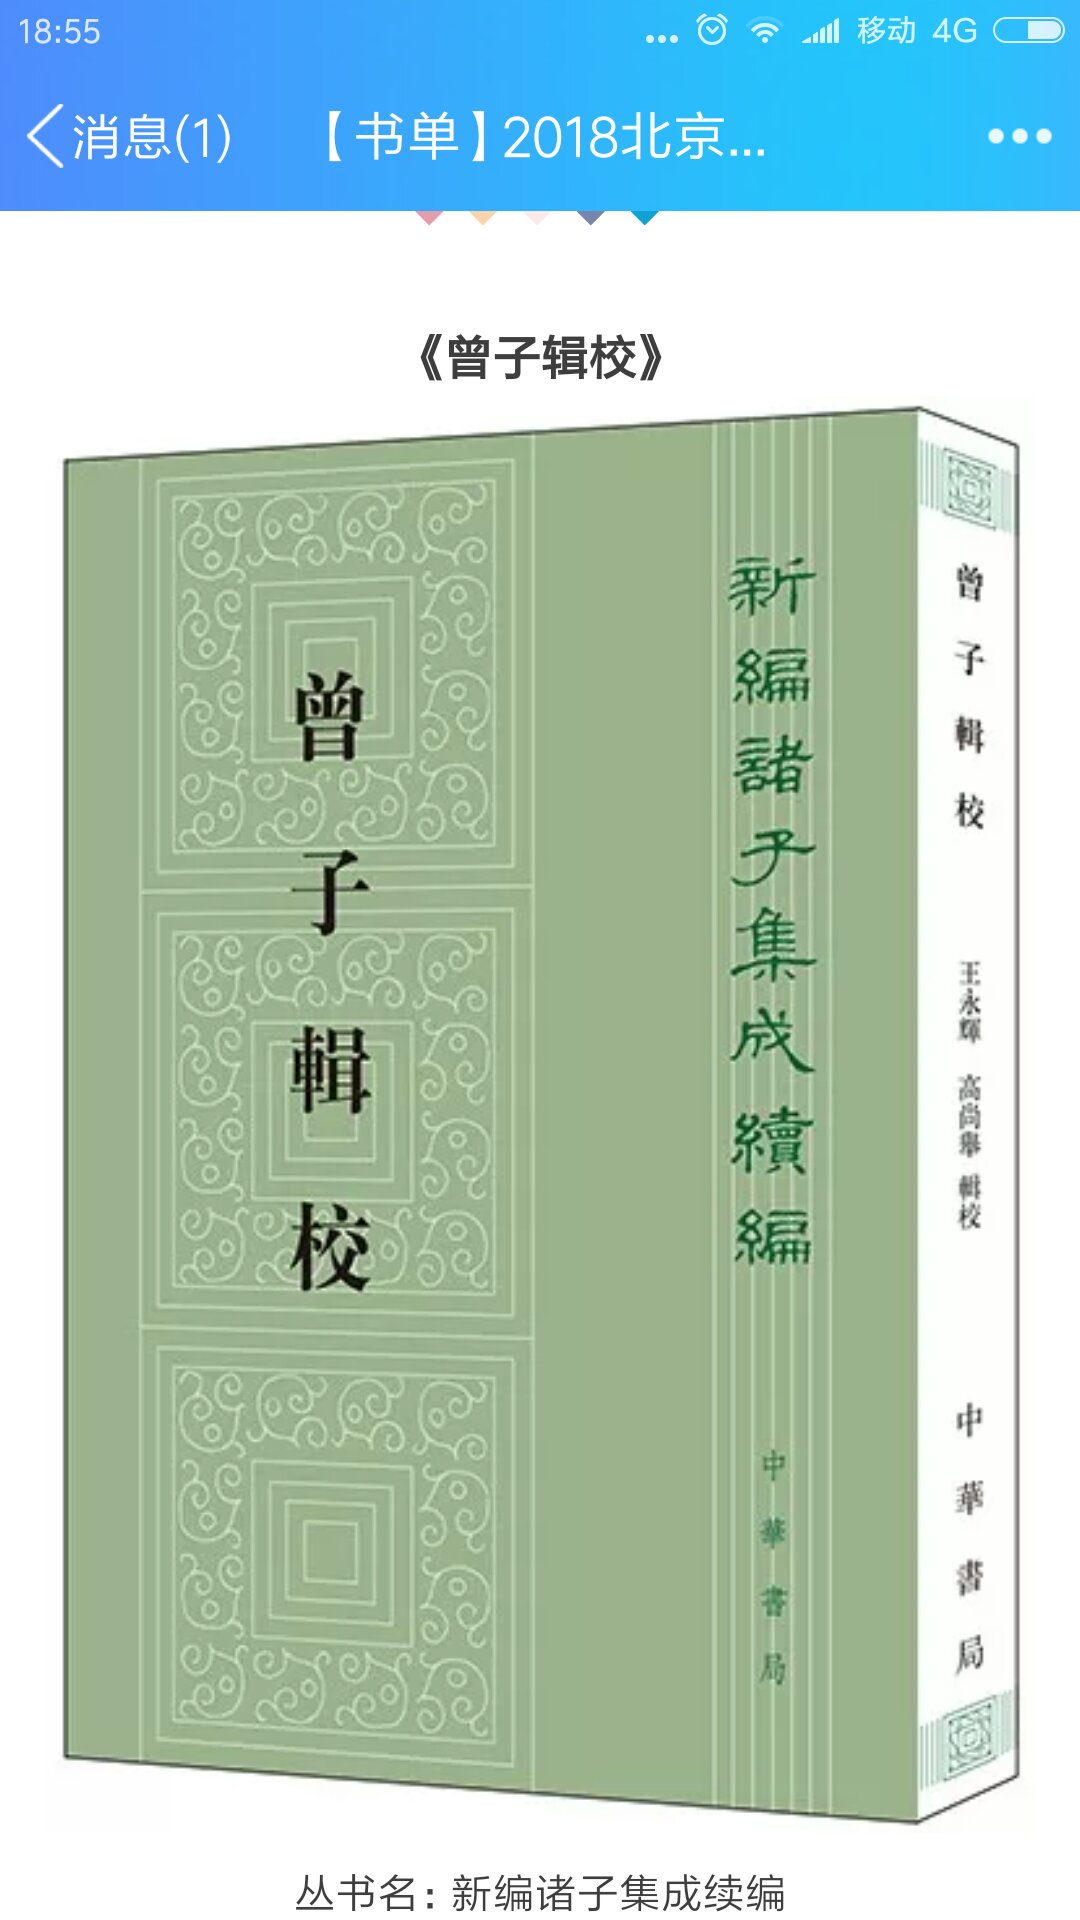 很好的书，中华书局的，物美价廉。推荐给大家。